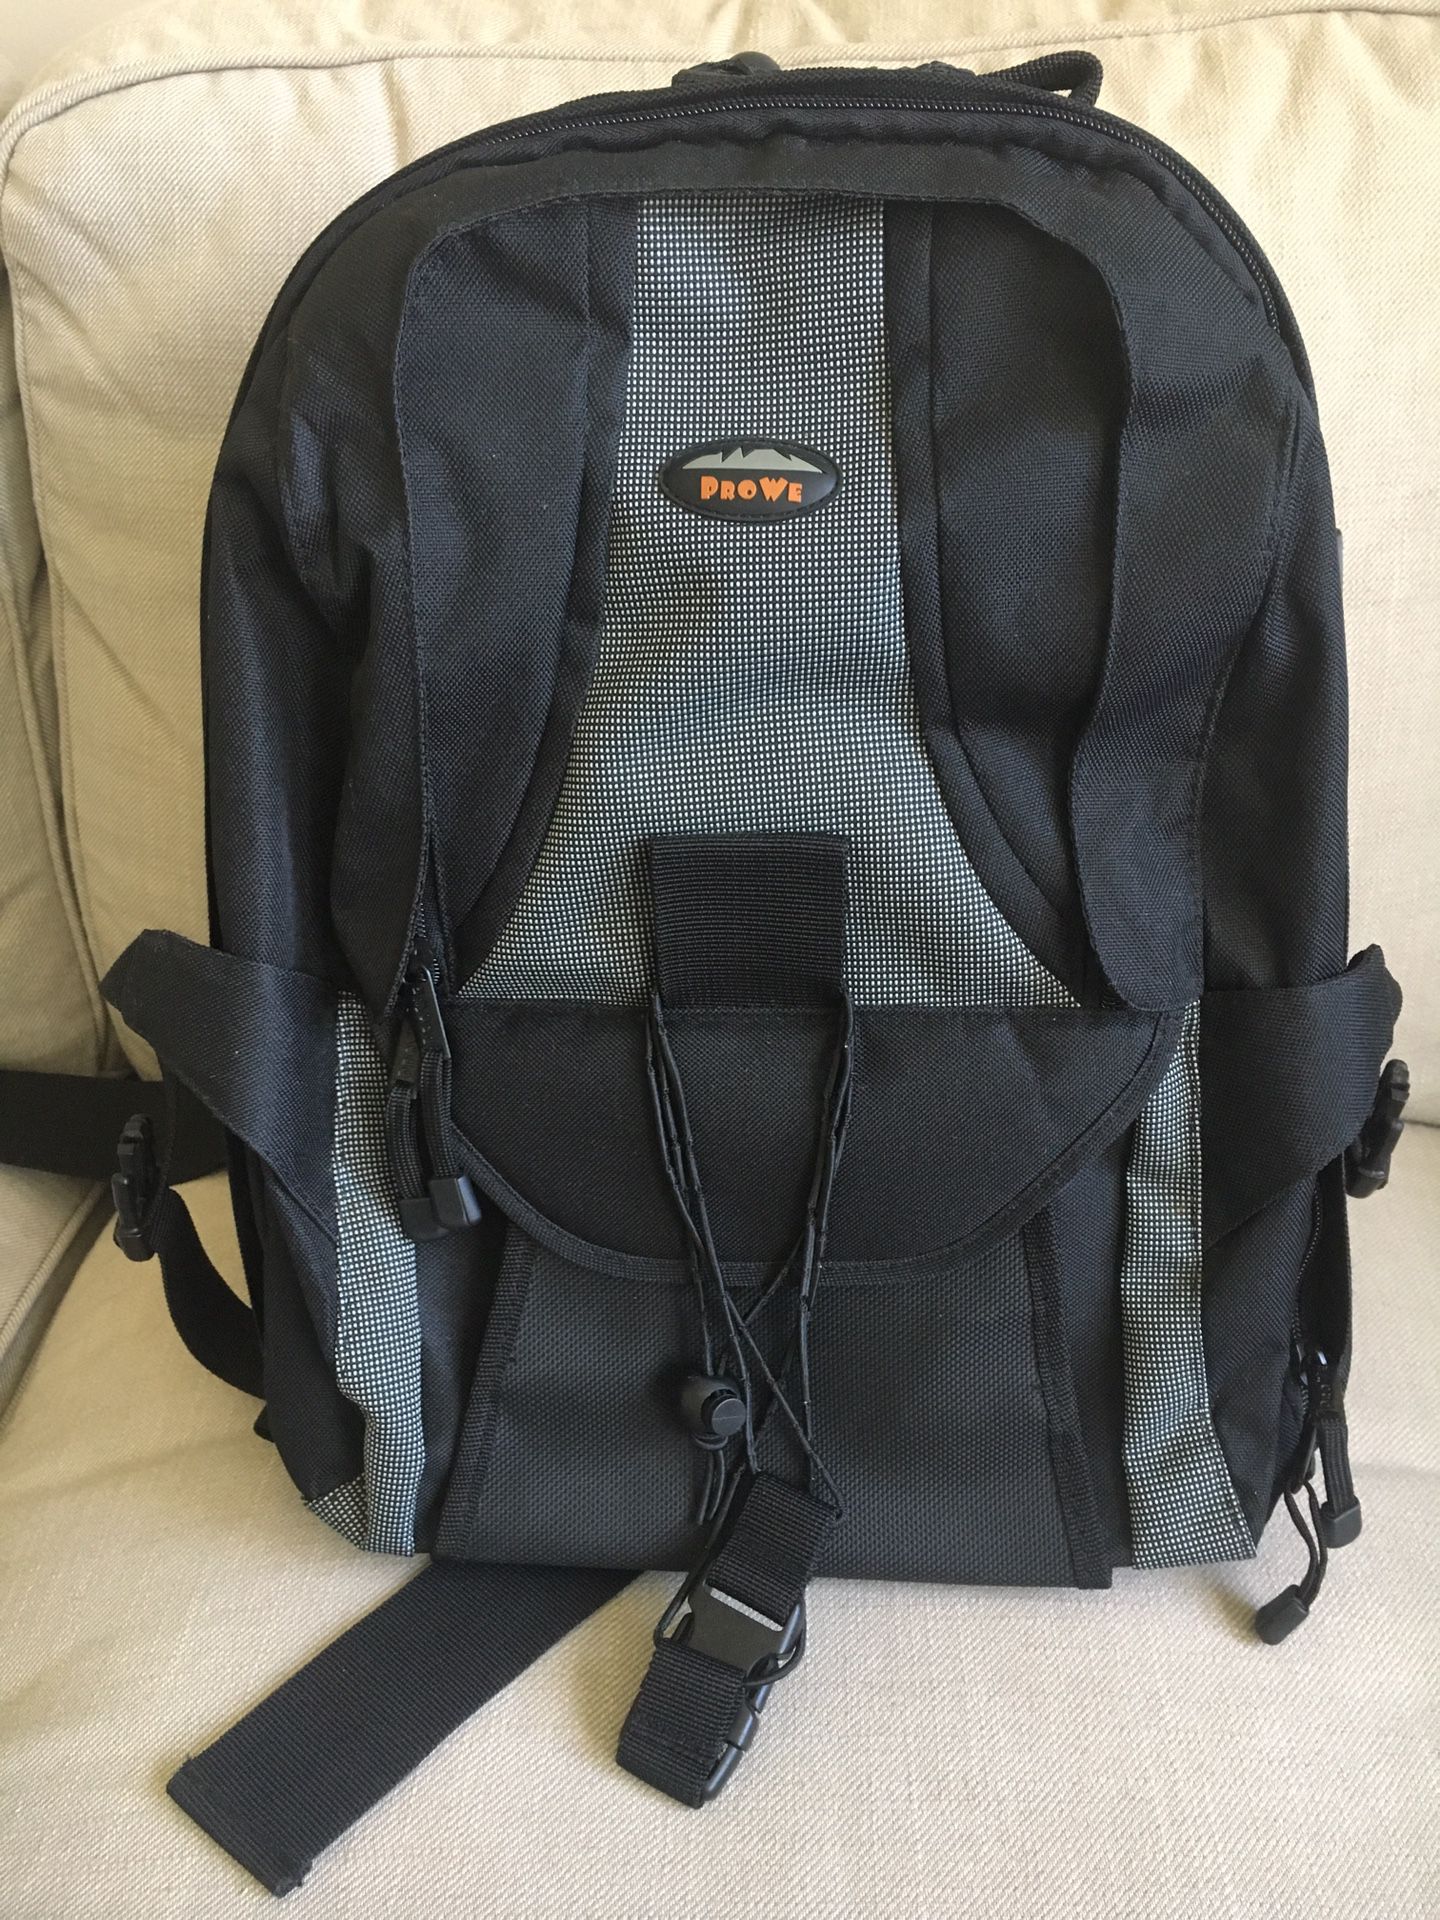 Prowe Camera Backpack